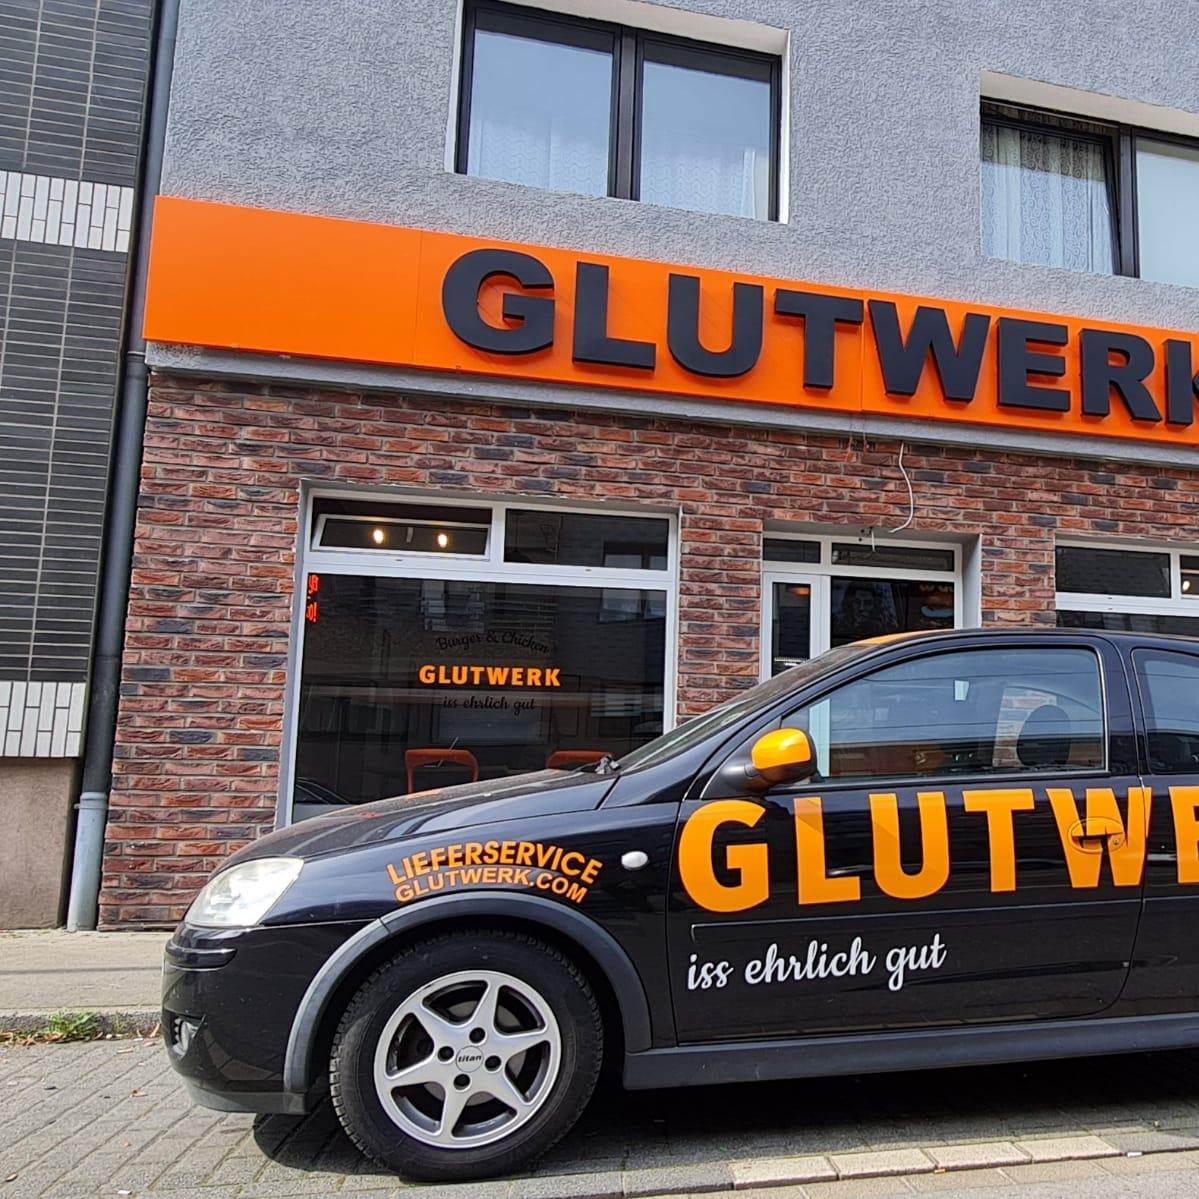 Restaurant "Glutwerk Mülheim" in Mülheim an der Ruhr